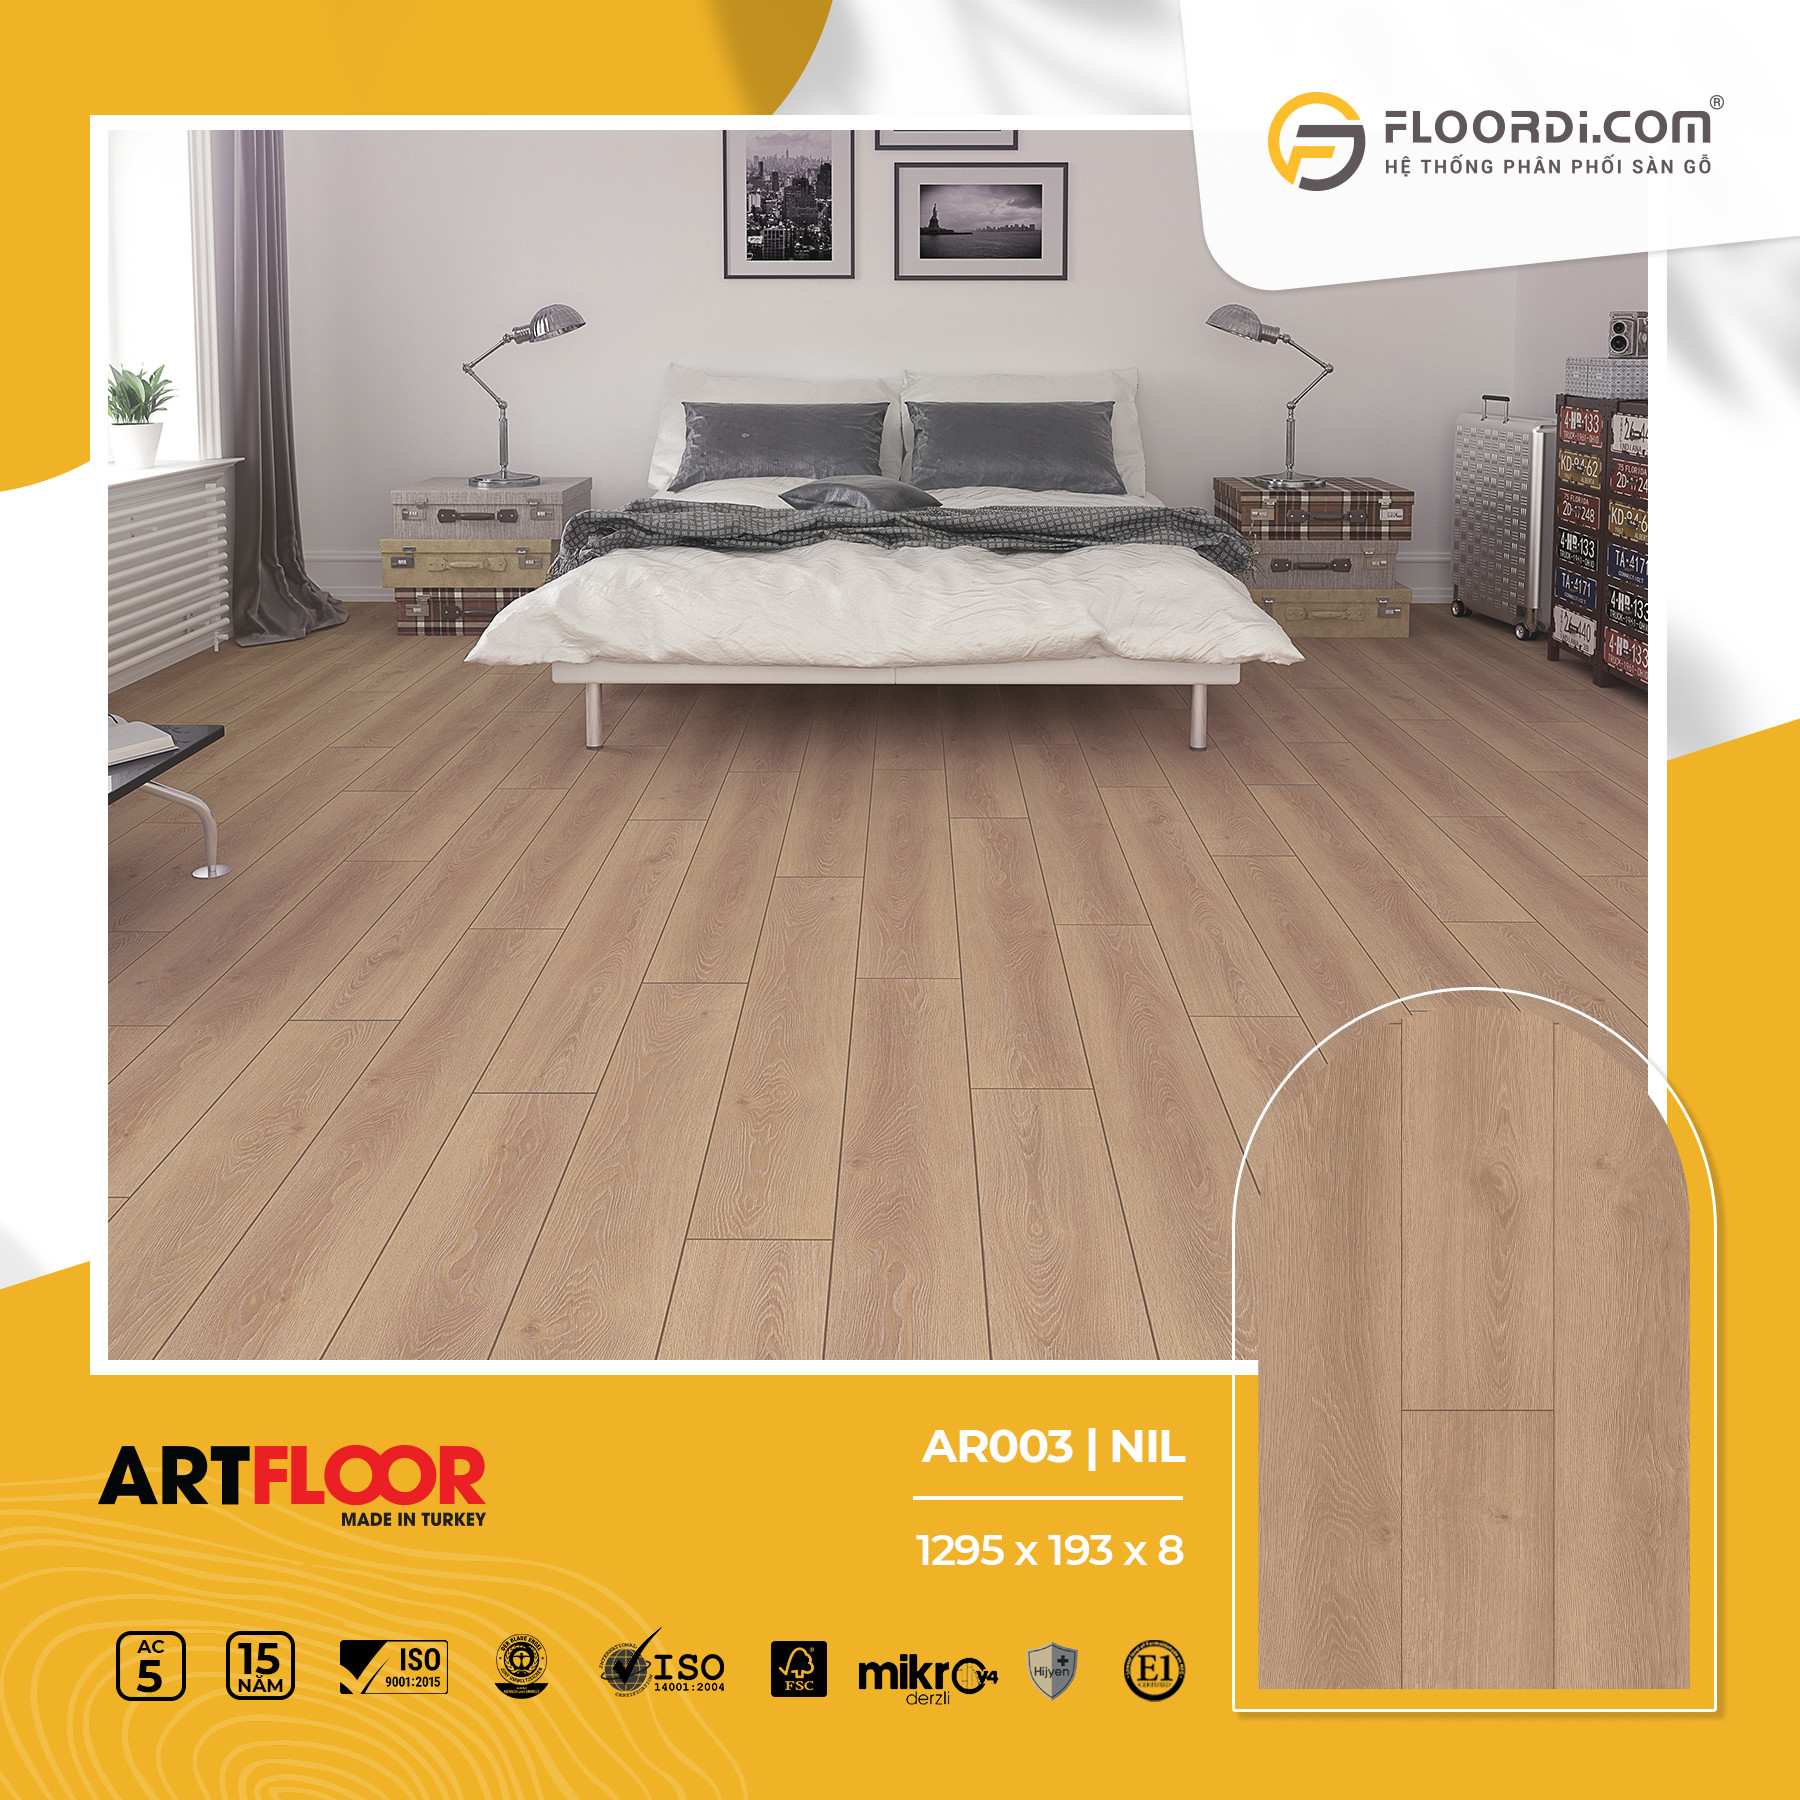 Sàn gỗ Artfloor 8mm đáp ứng mọi nhu cầu thiết kế